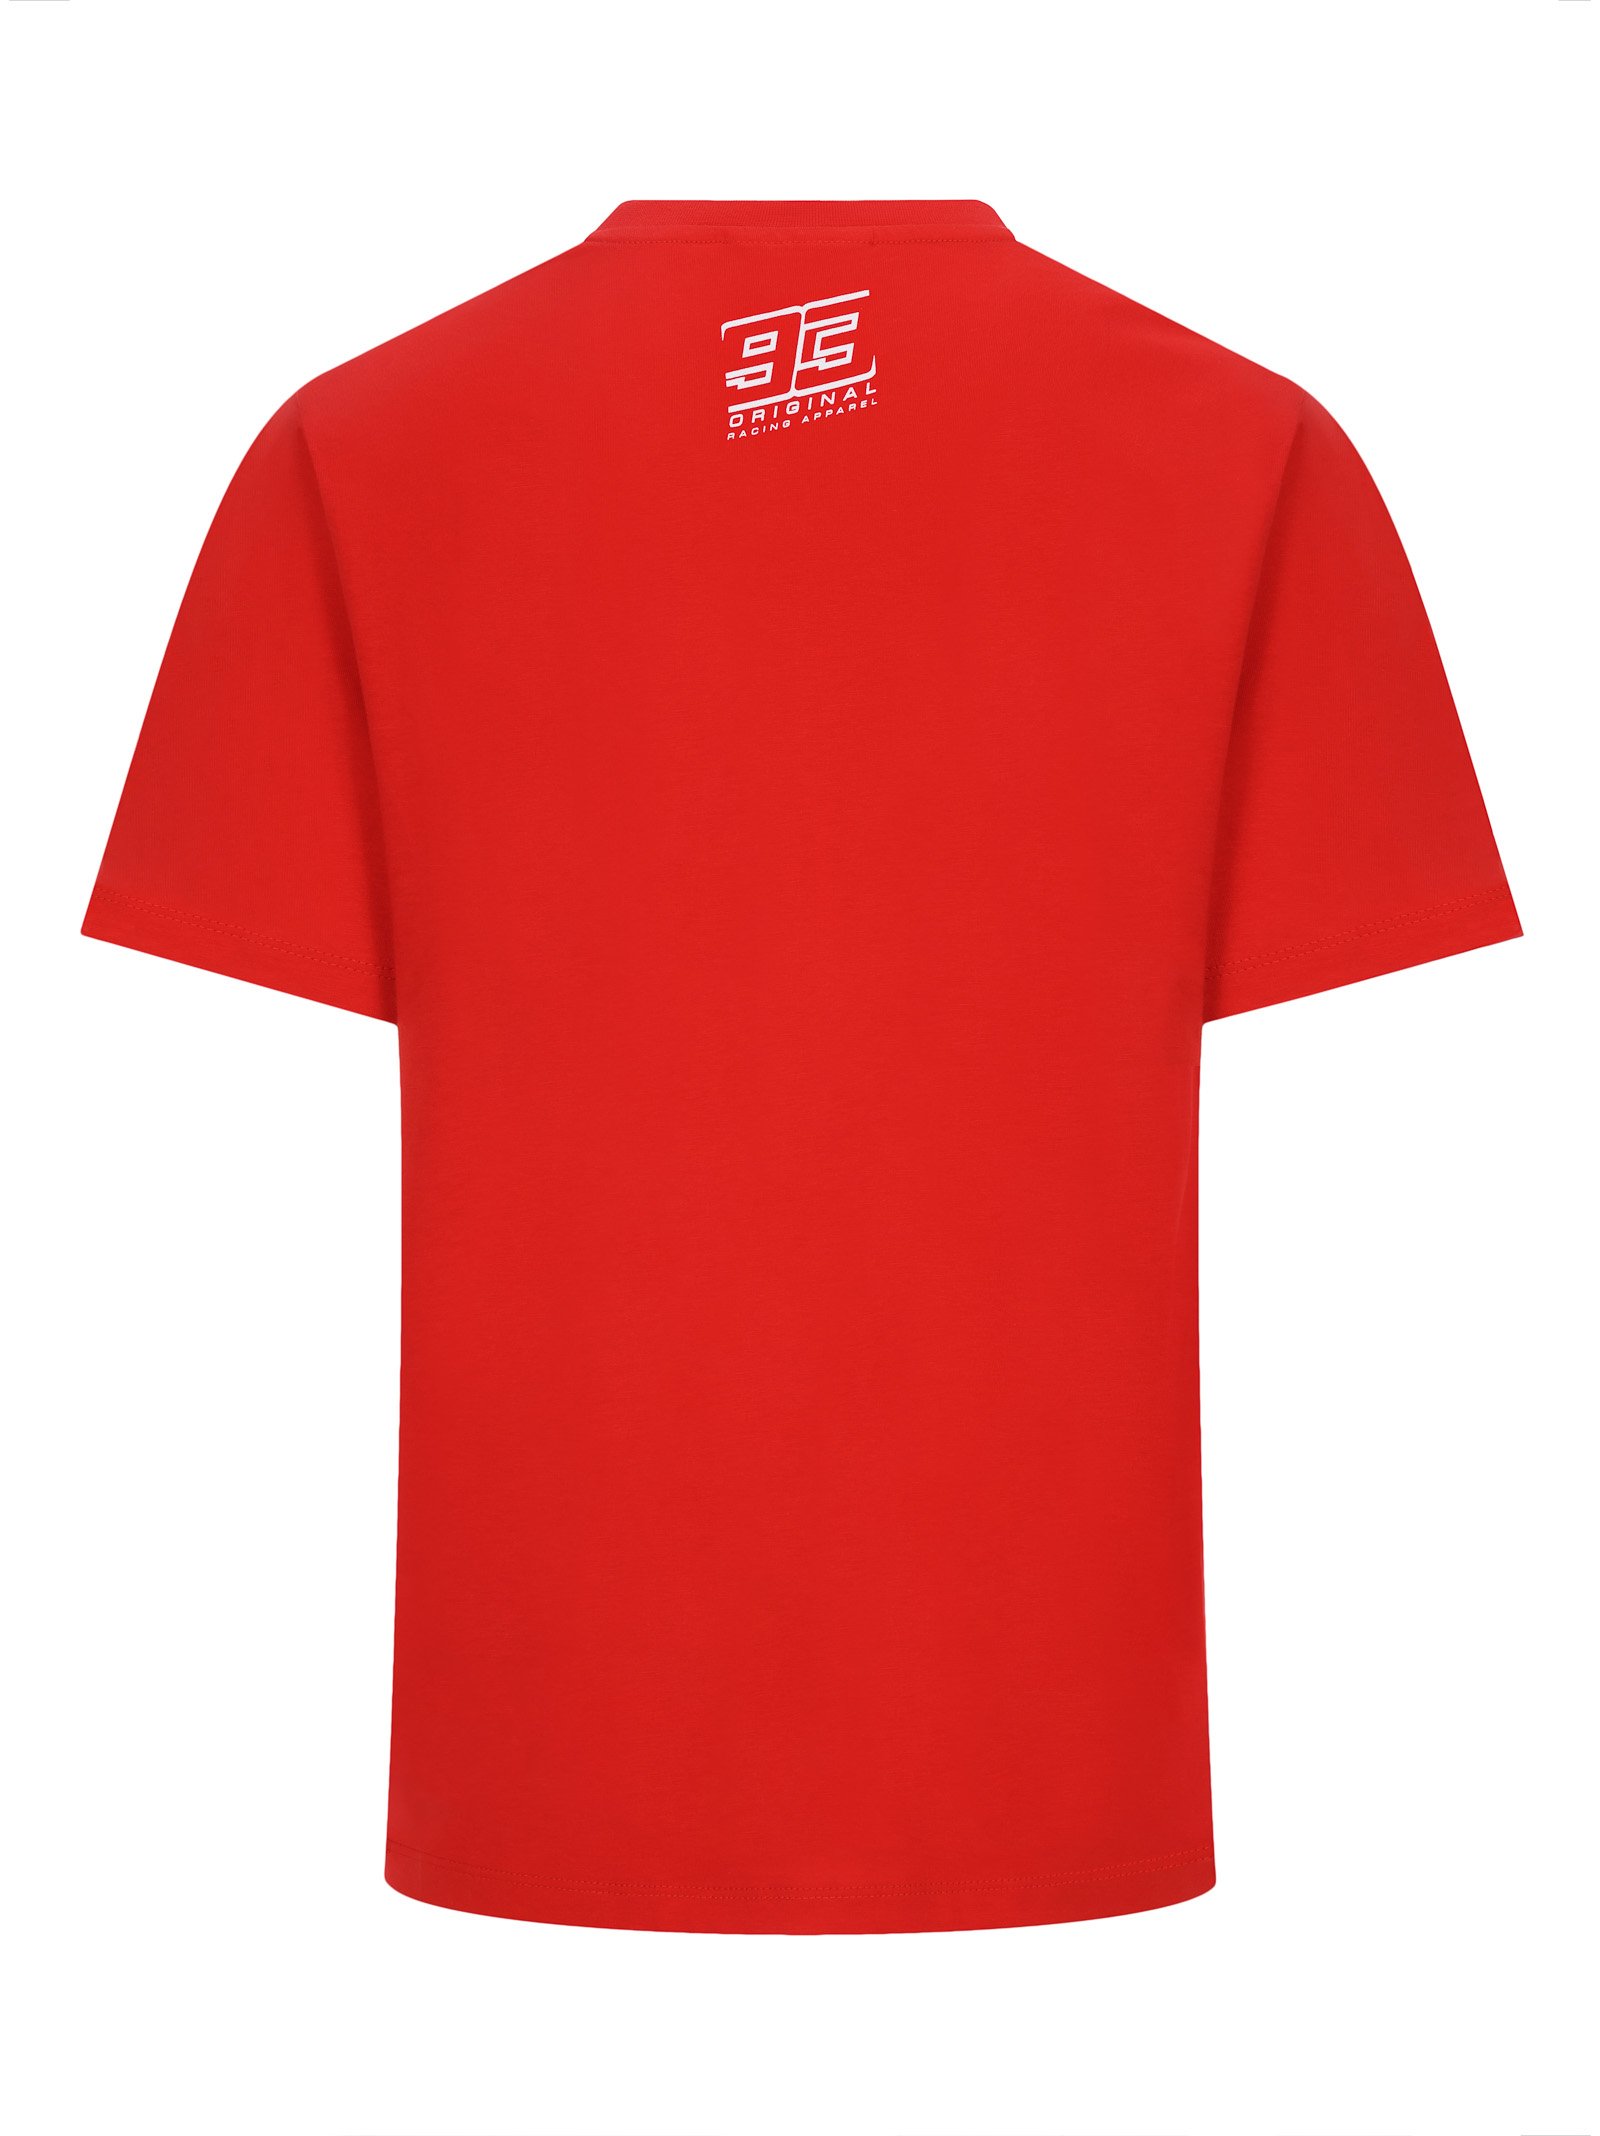 T-shirt homme MARC MARQUEZ rouge MM93 vue dos